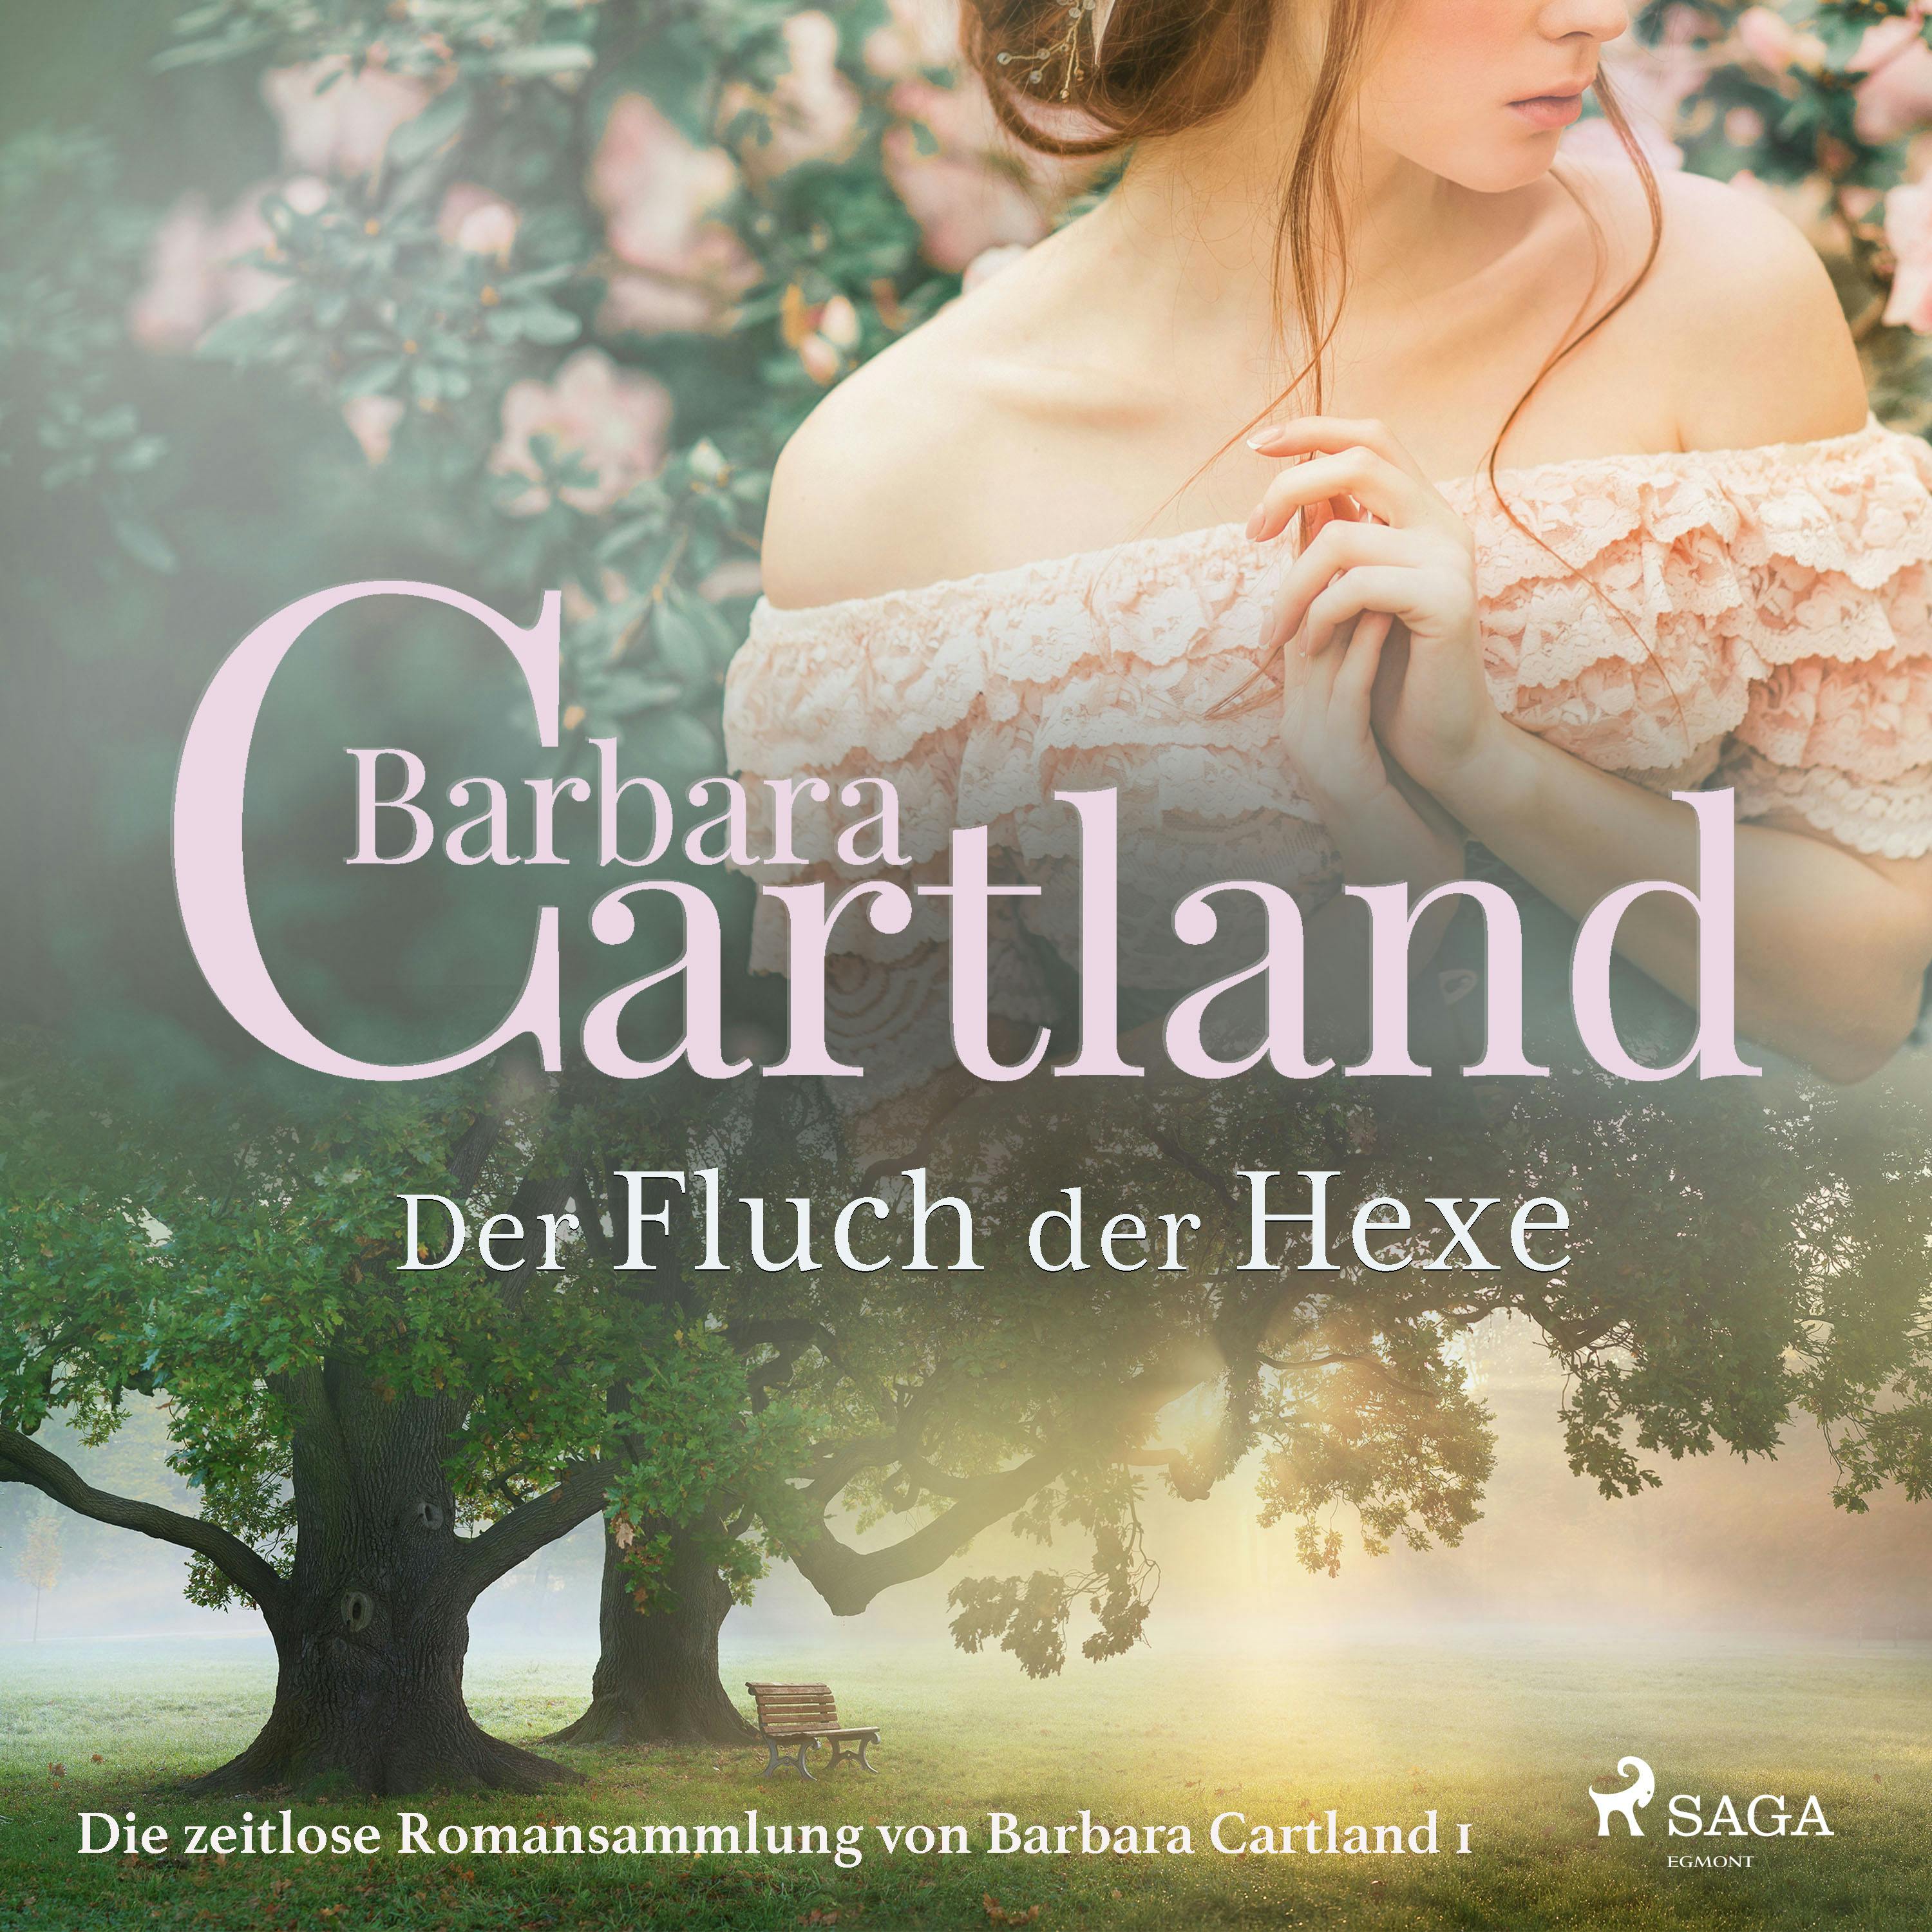 Der Fluch der Hexe (Die zeitlose Romansammlung von Barbara Cartland 1) - Barbara Cartland